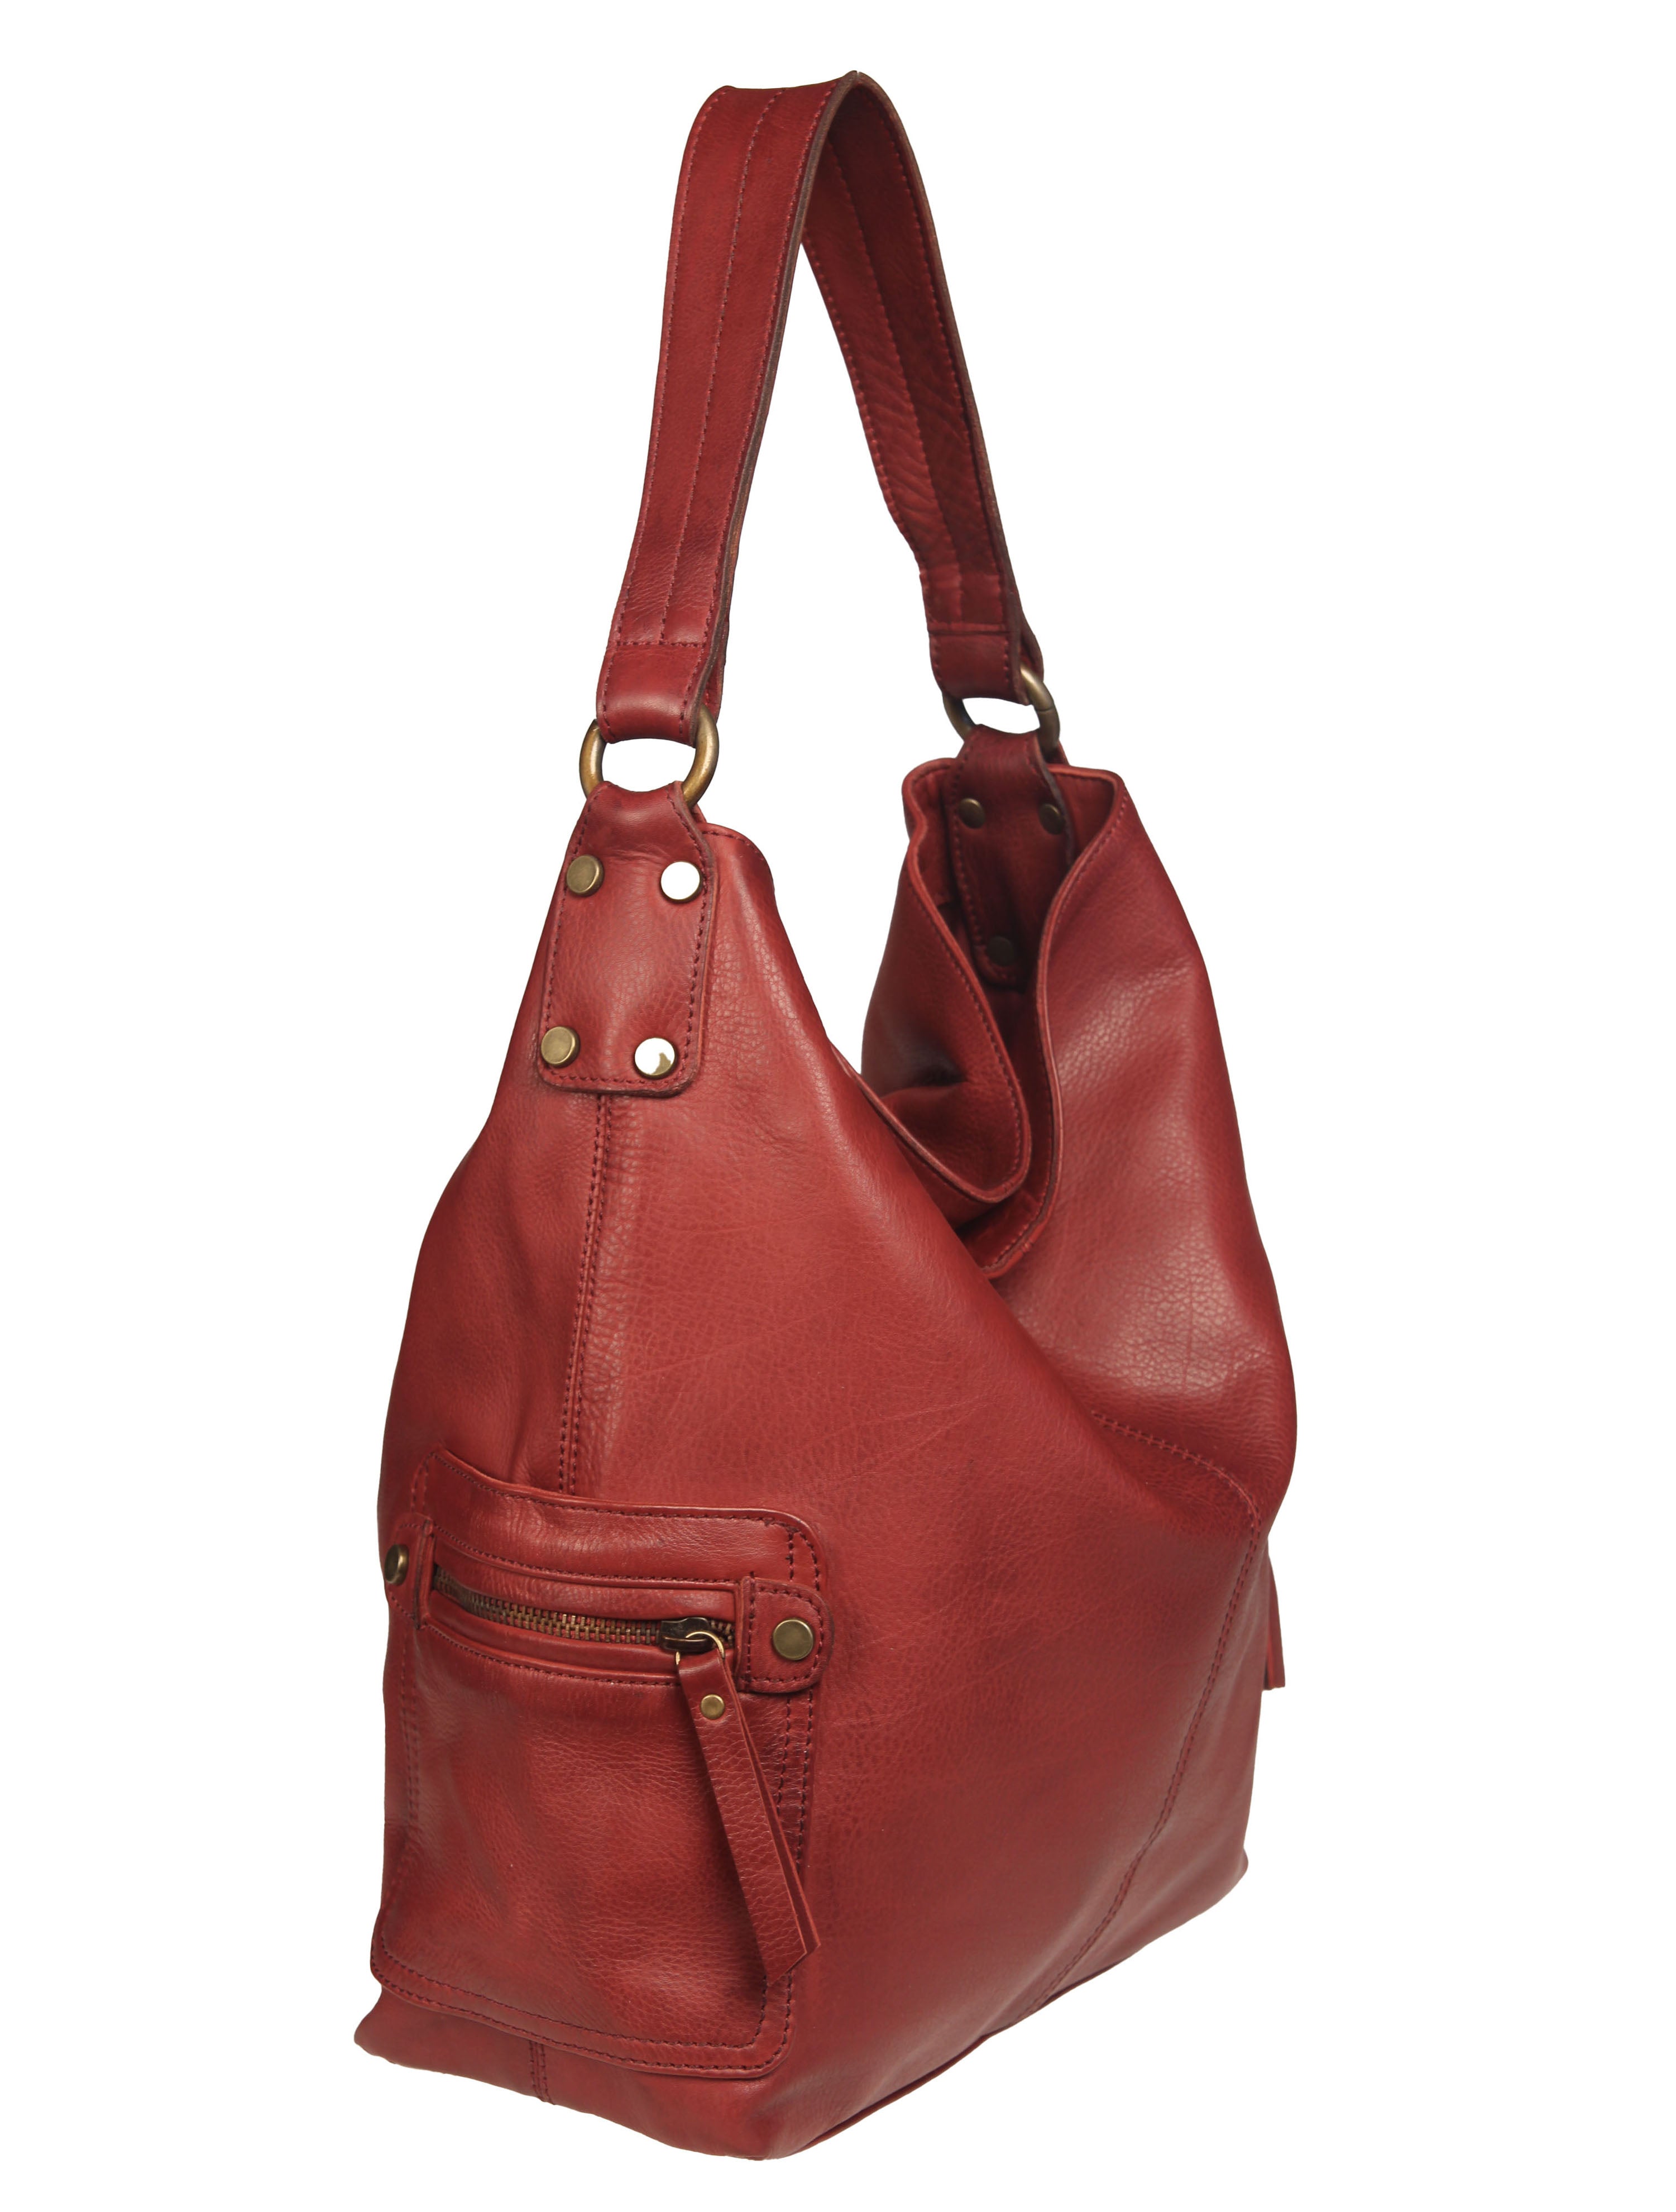 Tano Gray Shoulder Bags for Women | Mercari